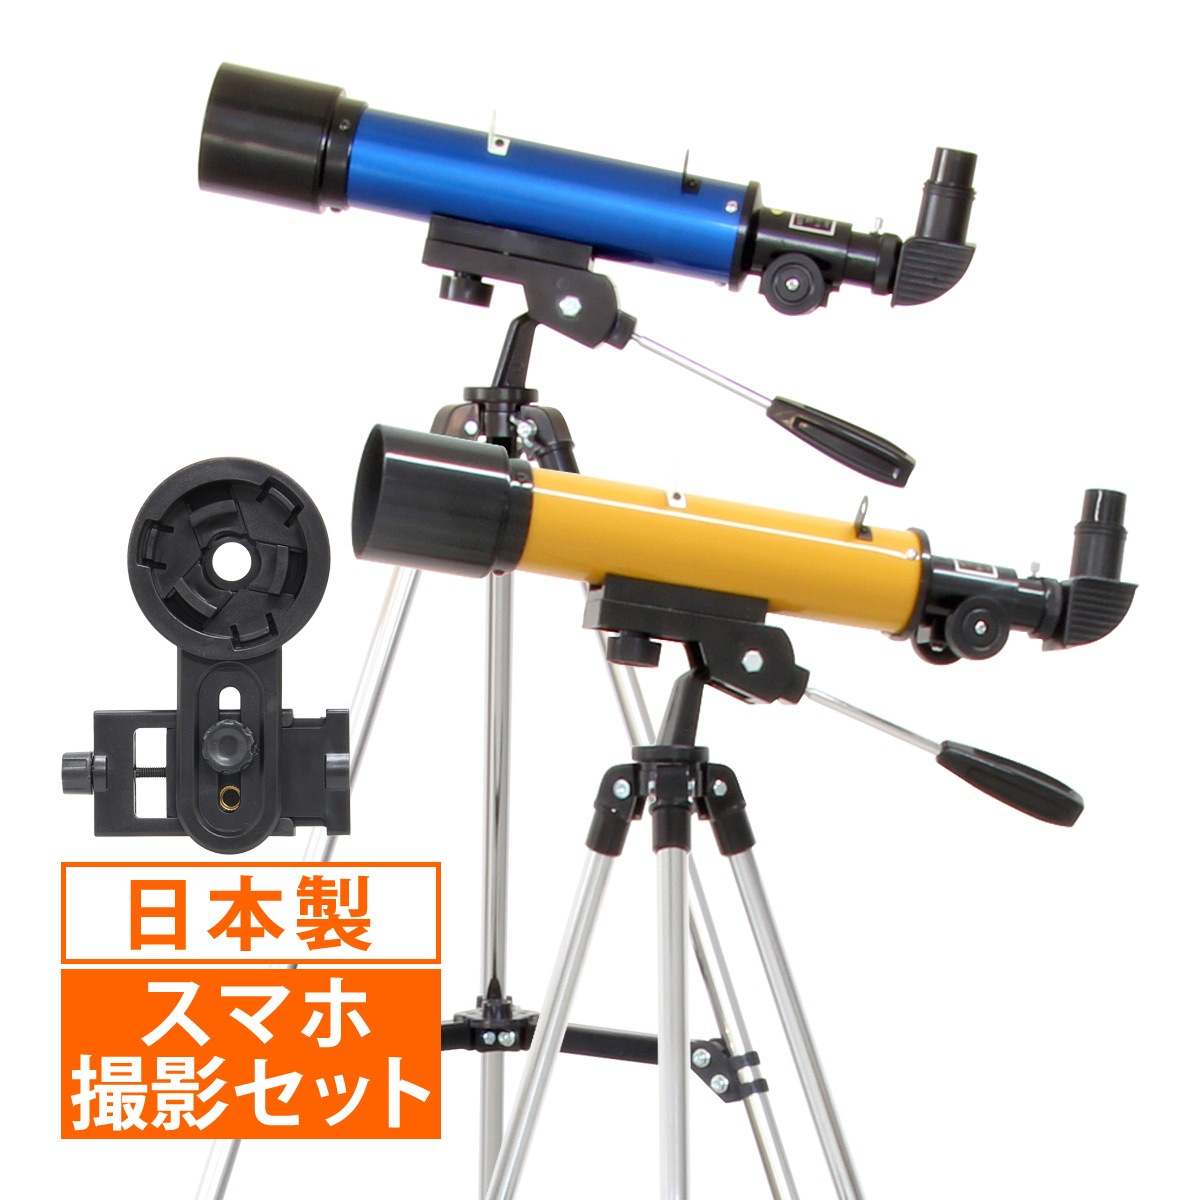 天体望遠鏡 スマホ 撮影 初心者 レグルス50 天体望遠鏡セット 望遠鏡 日本製 天体 子供 小学生 天体ガイドブック付き カメラアダプター 携帯 屈折式 おすすめ 入門 入学祝い